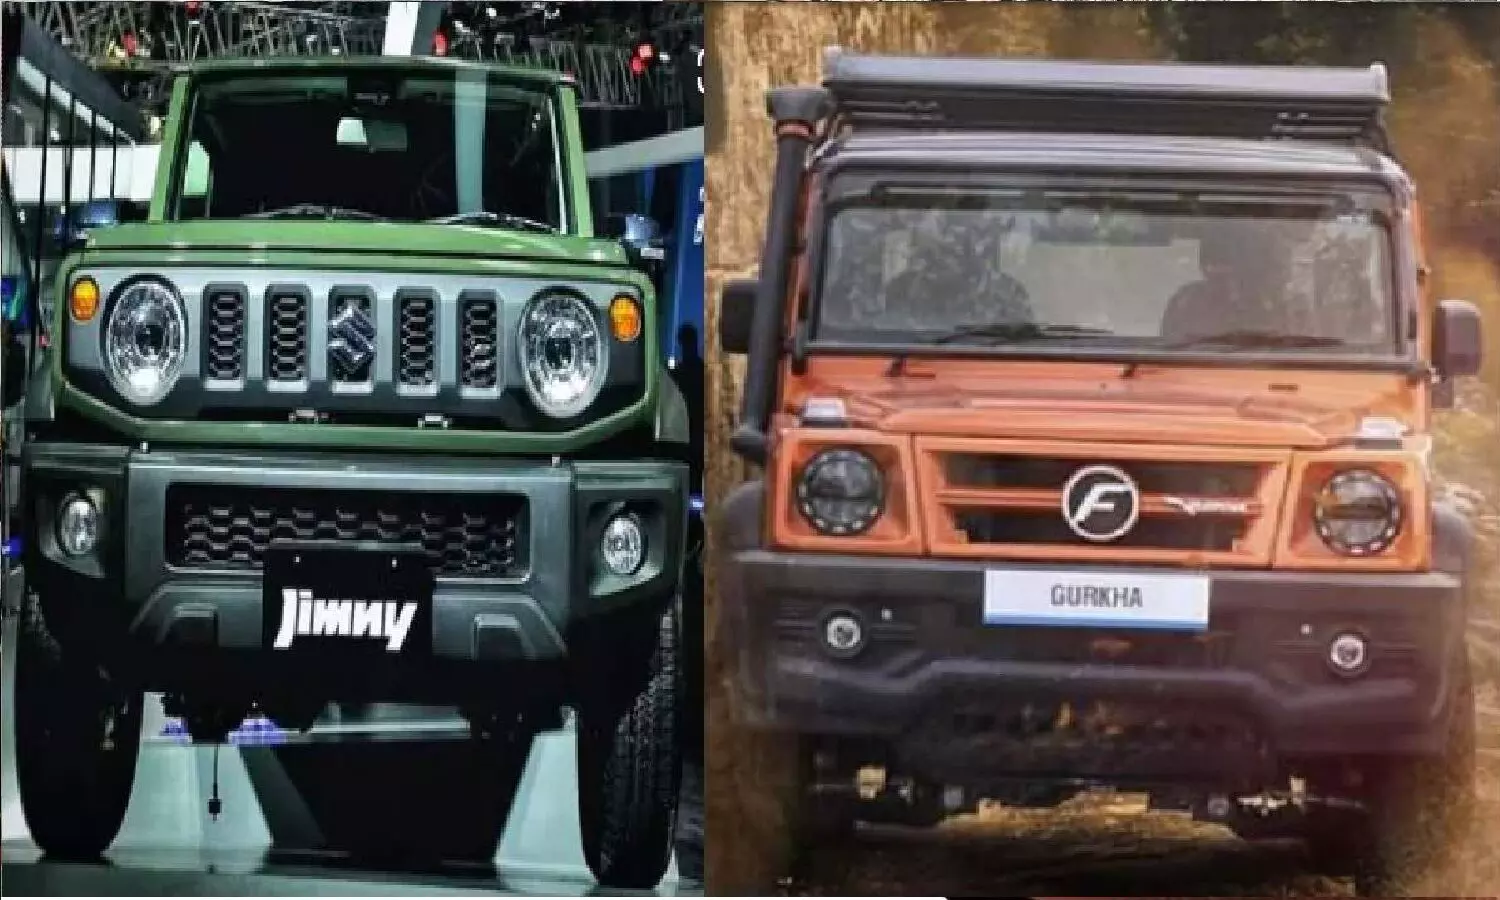 Maruti Jimny Vs Force Gurkha In Hindi: कौन सी SUV है बेस्ट